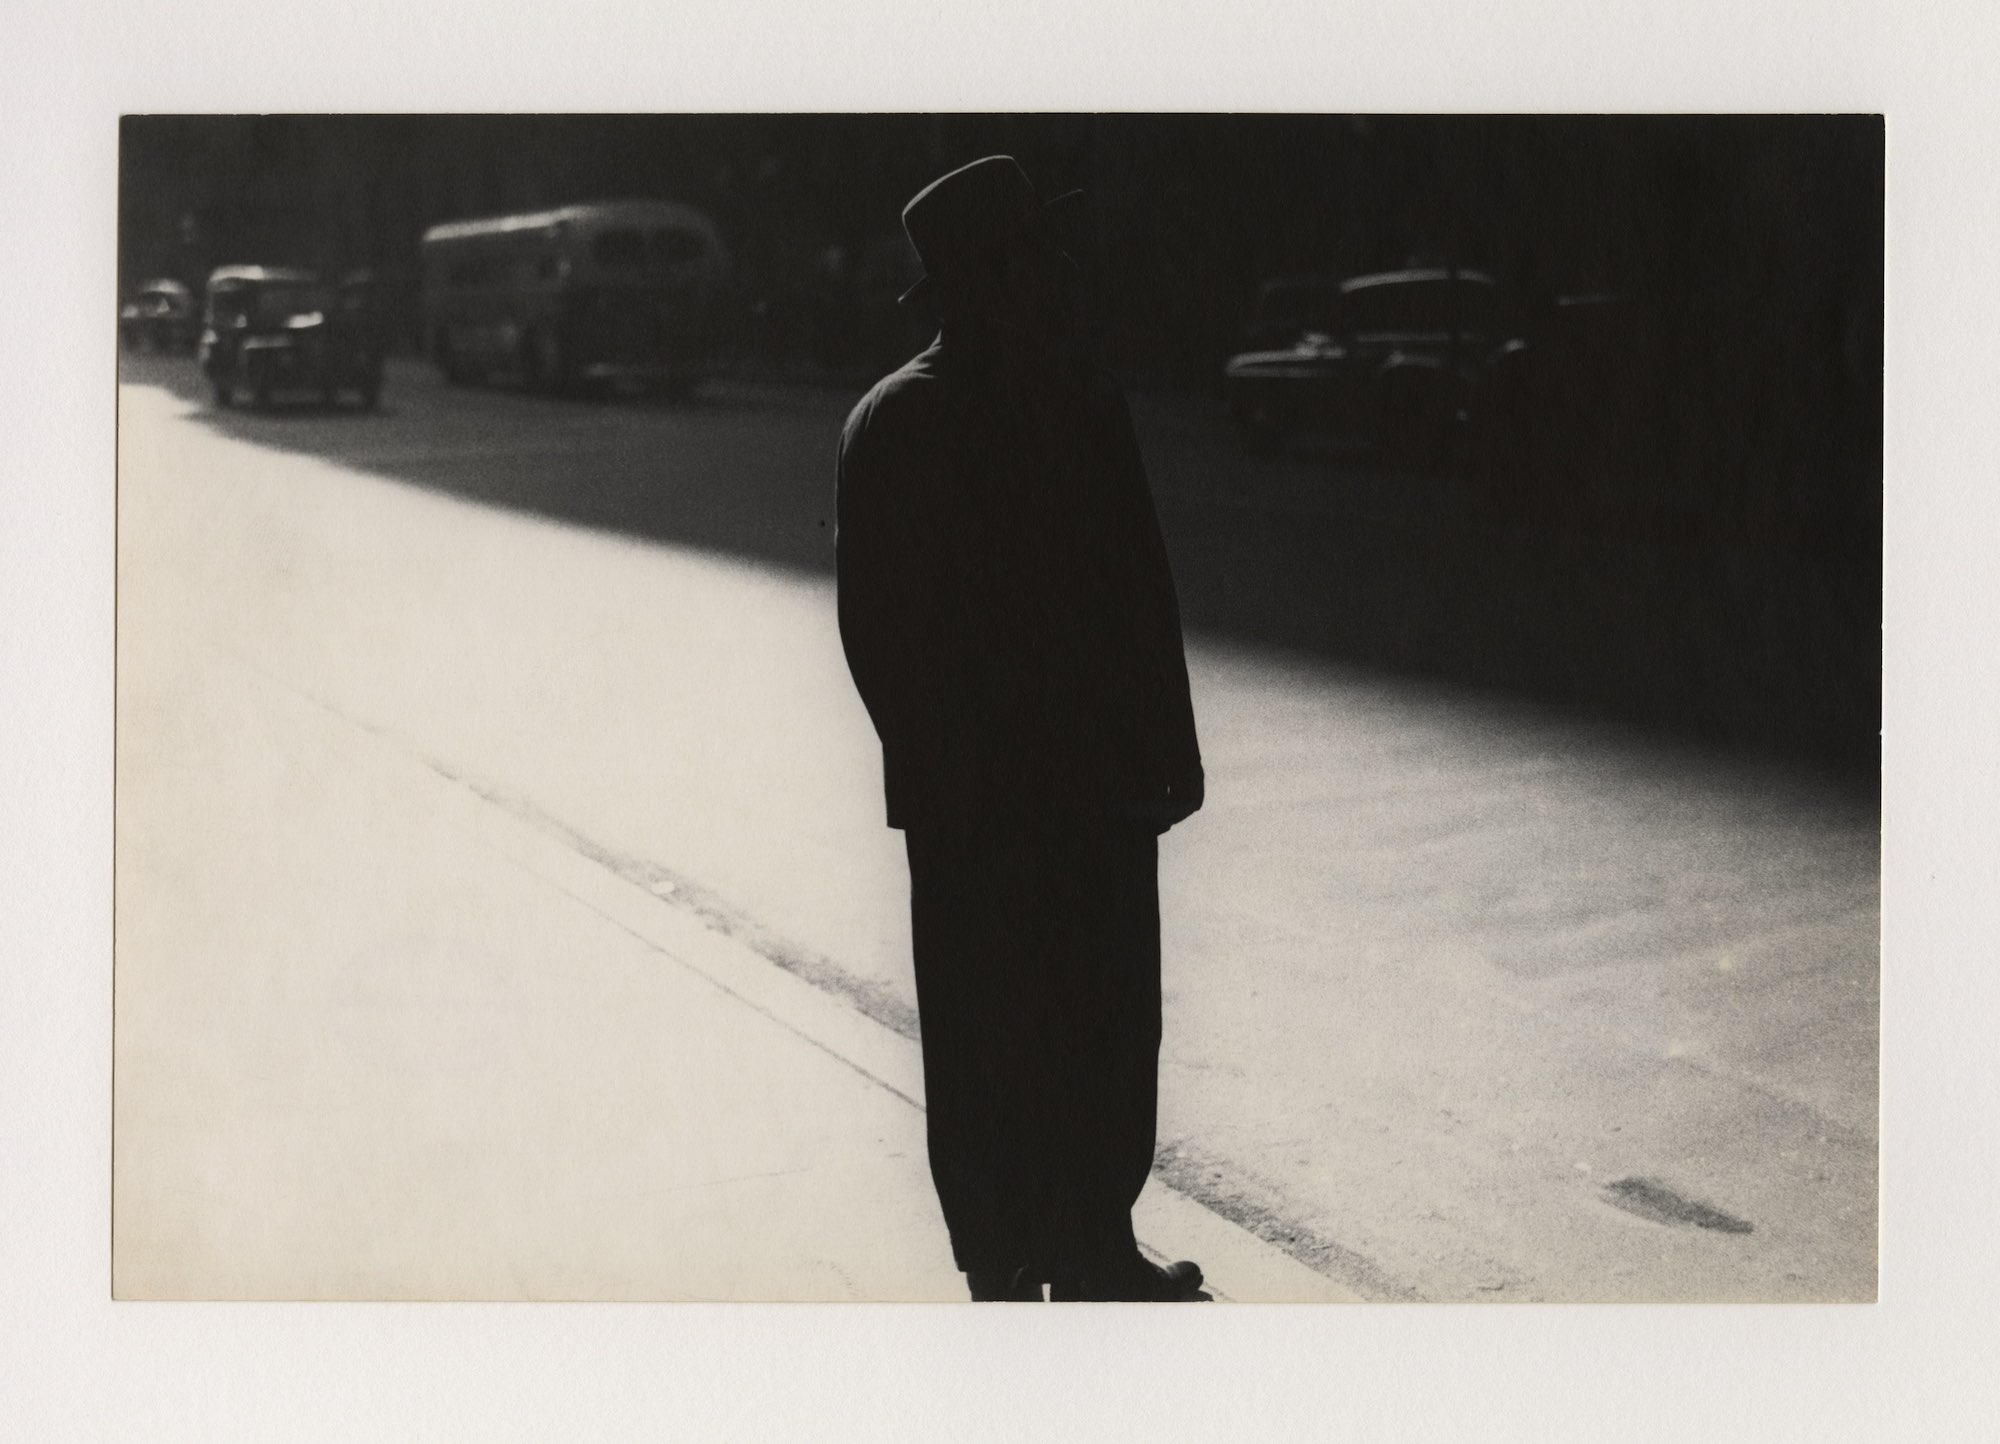 Sidewalk_1954_Leiter